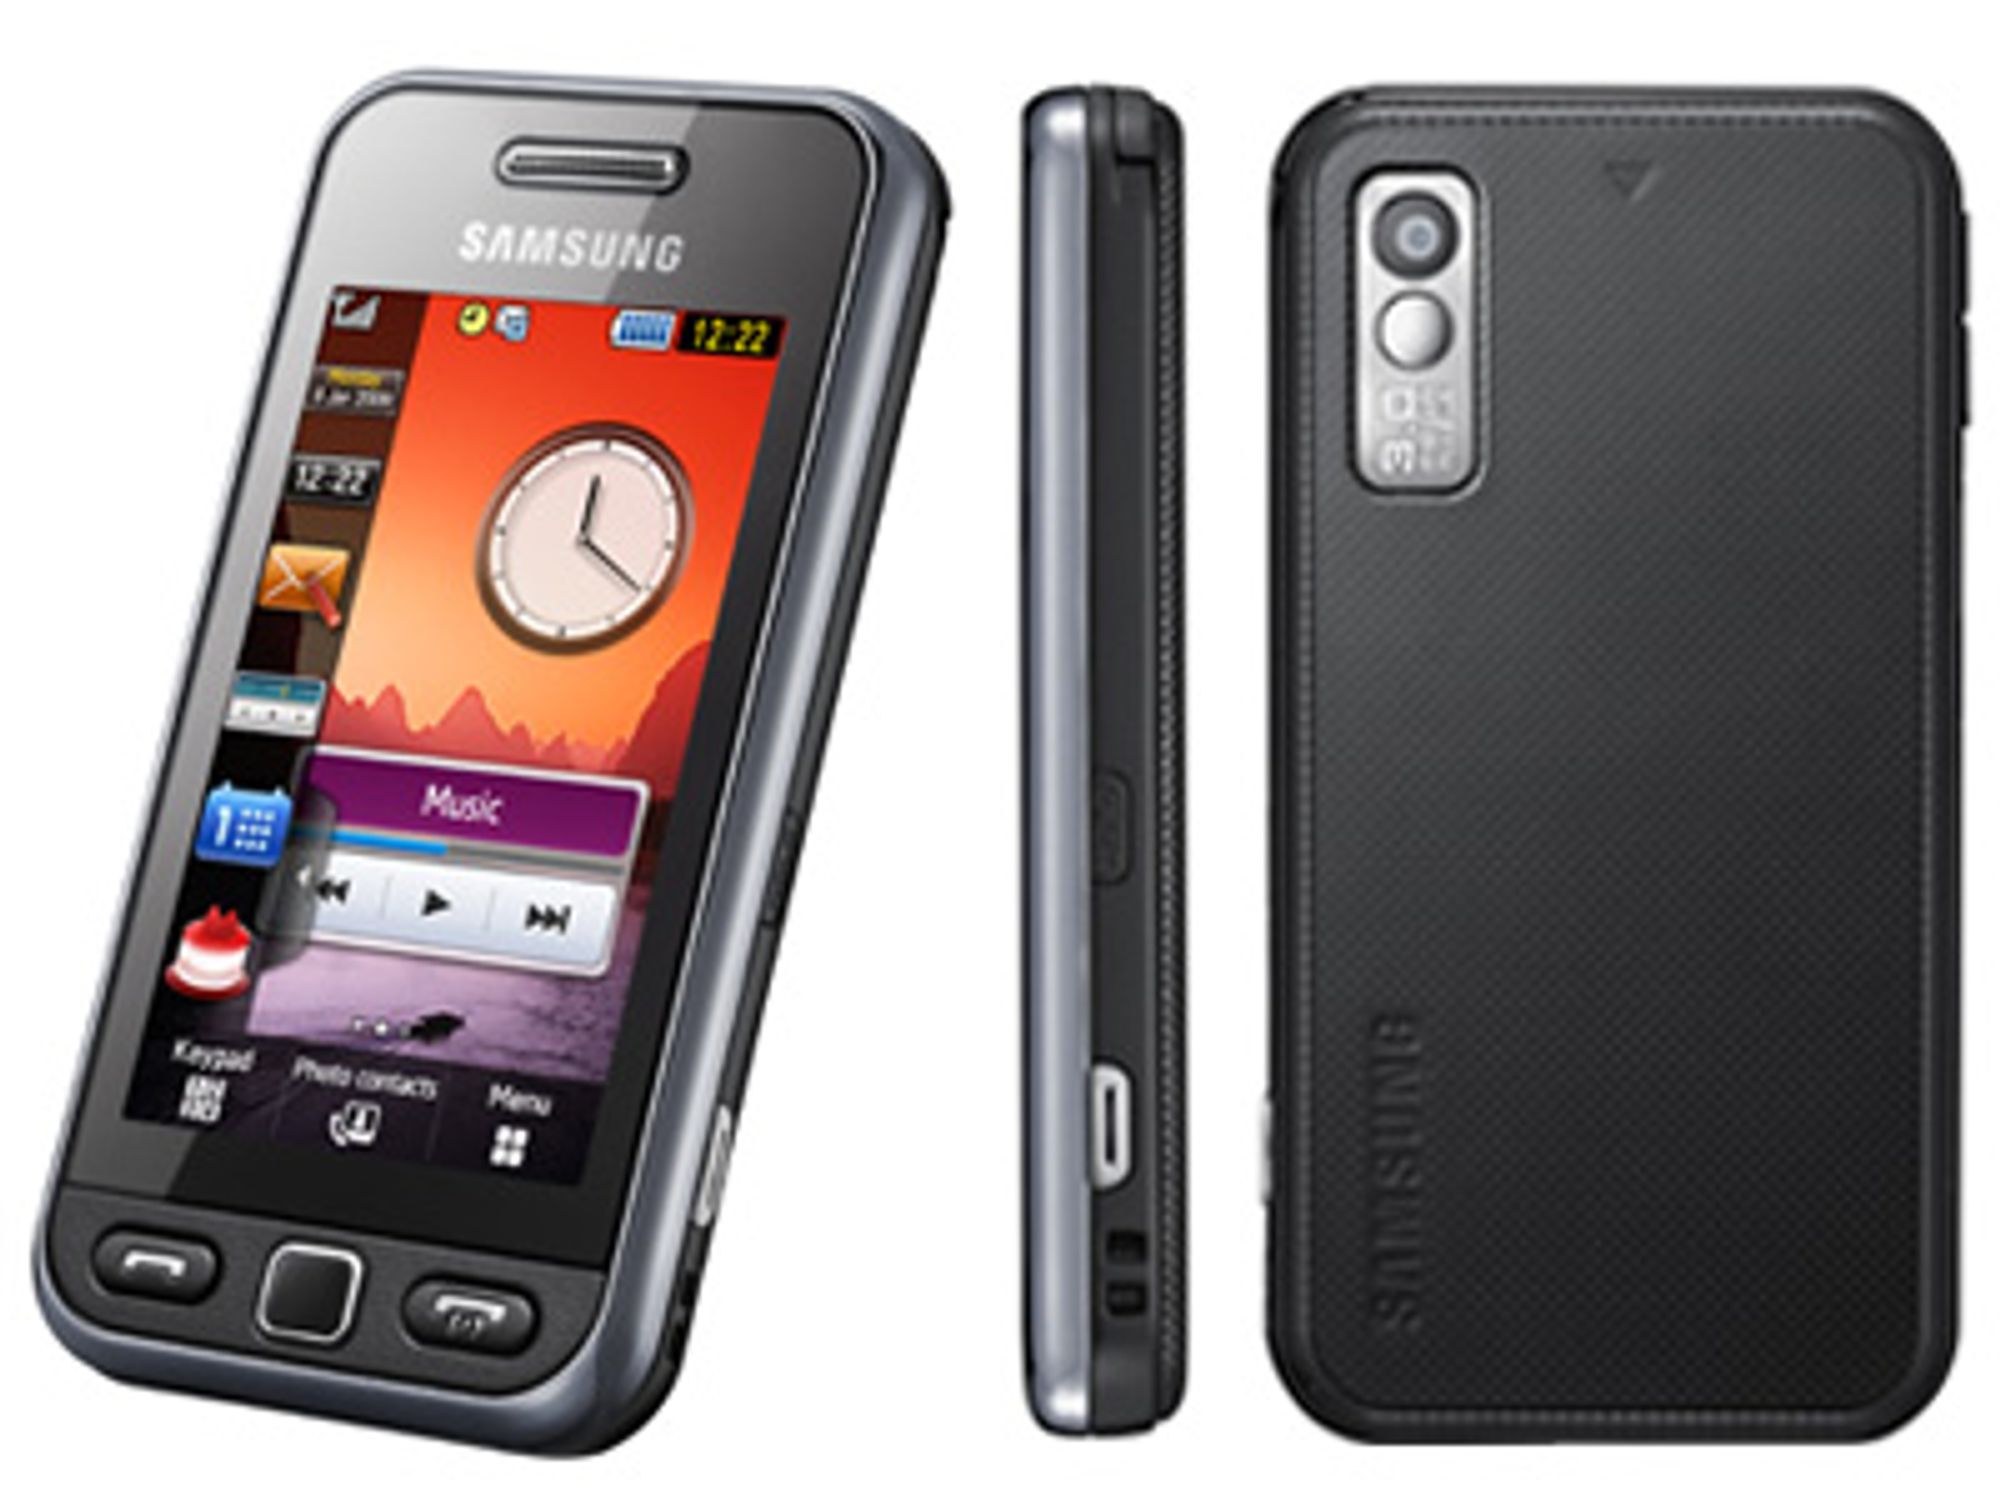  Forel&amp;oslash;pig er Samsung S5230 den eneste telefonen p&amp;aring; markedet med innebygget NFC-antenne. Det er ventet flere modeller p&amp;aring; markedet i l&amp;oslash;pet av de n&amp;aelig;rmeste &amp;aring;rene. 